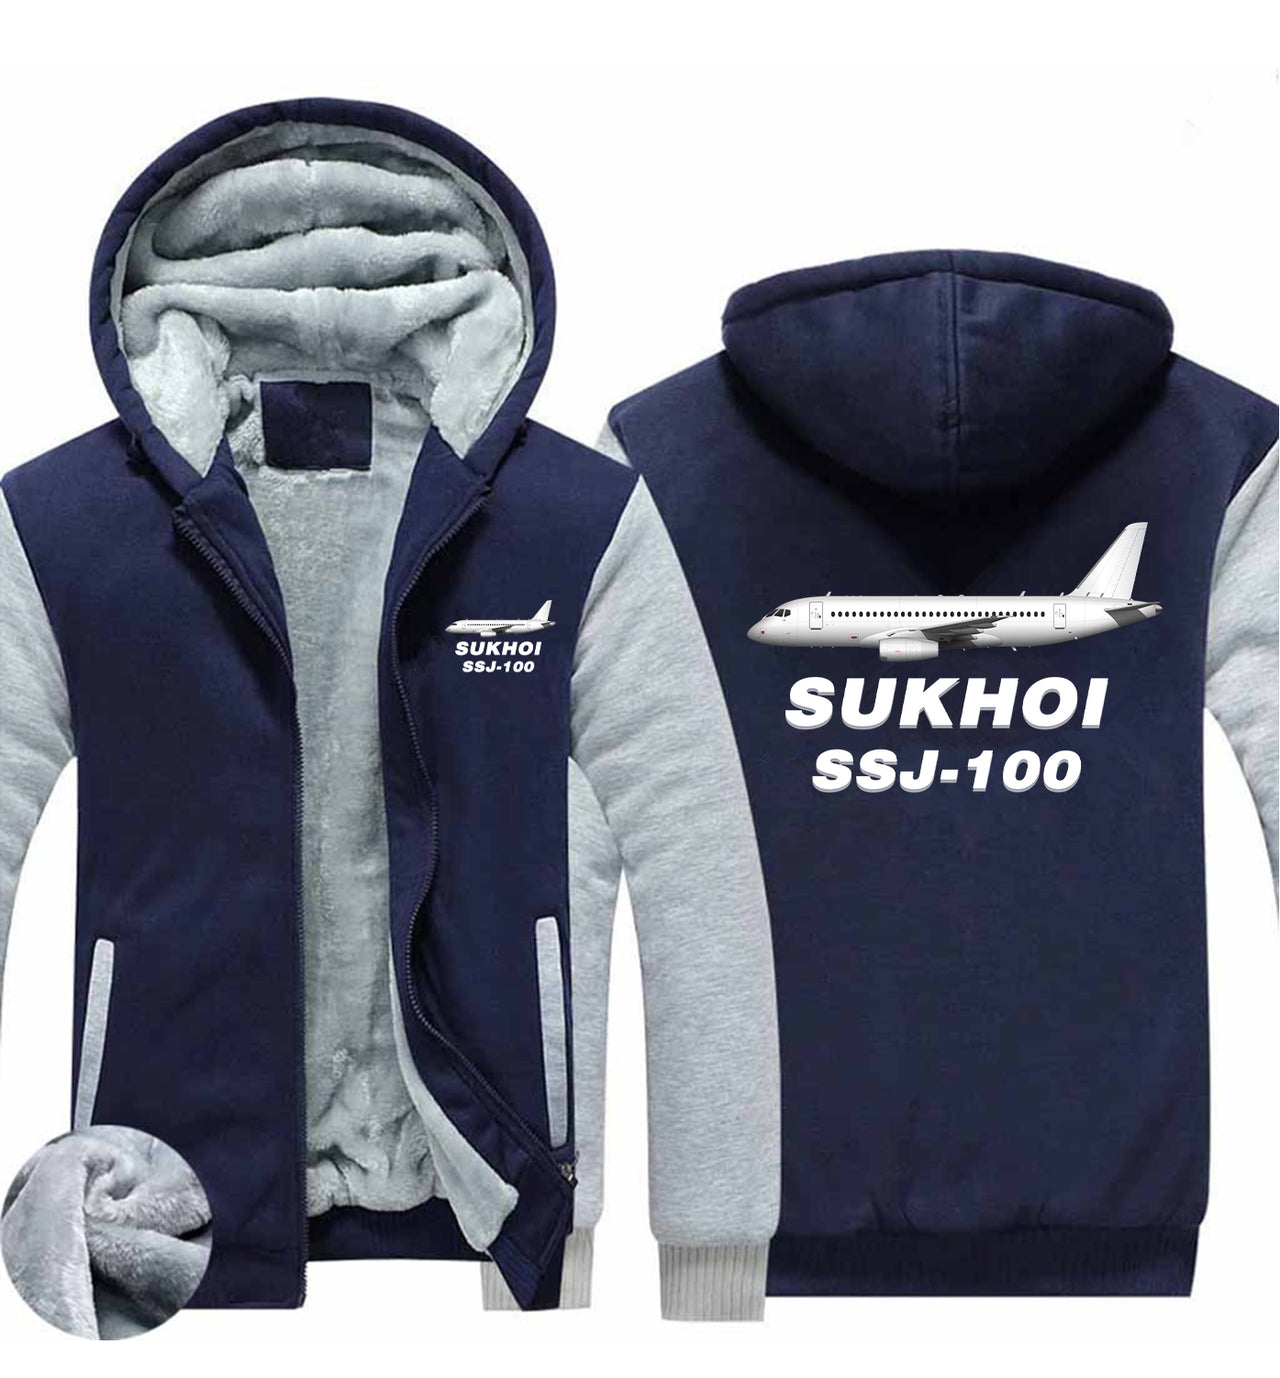 Sukhoi Superjet 100 Designed Zipped Sweatshirts